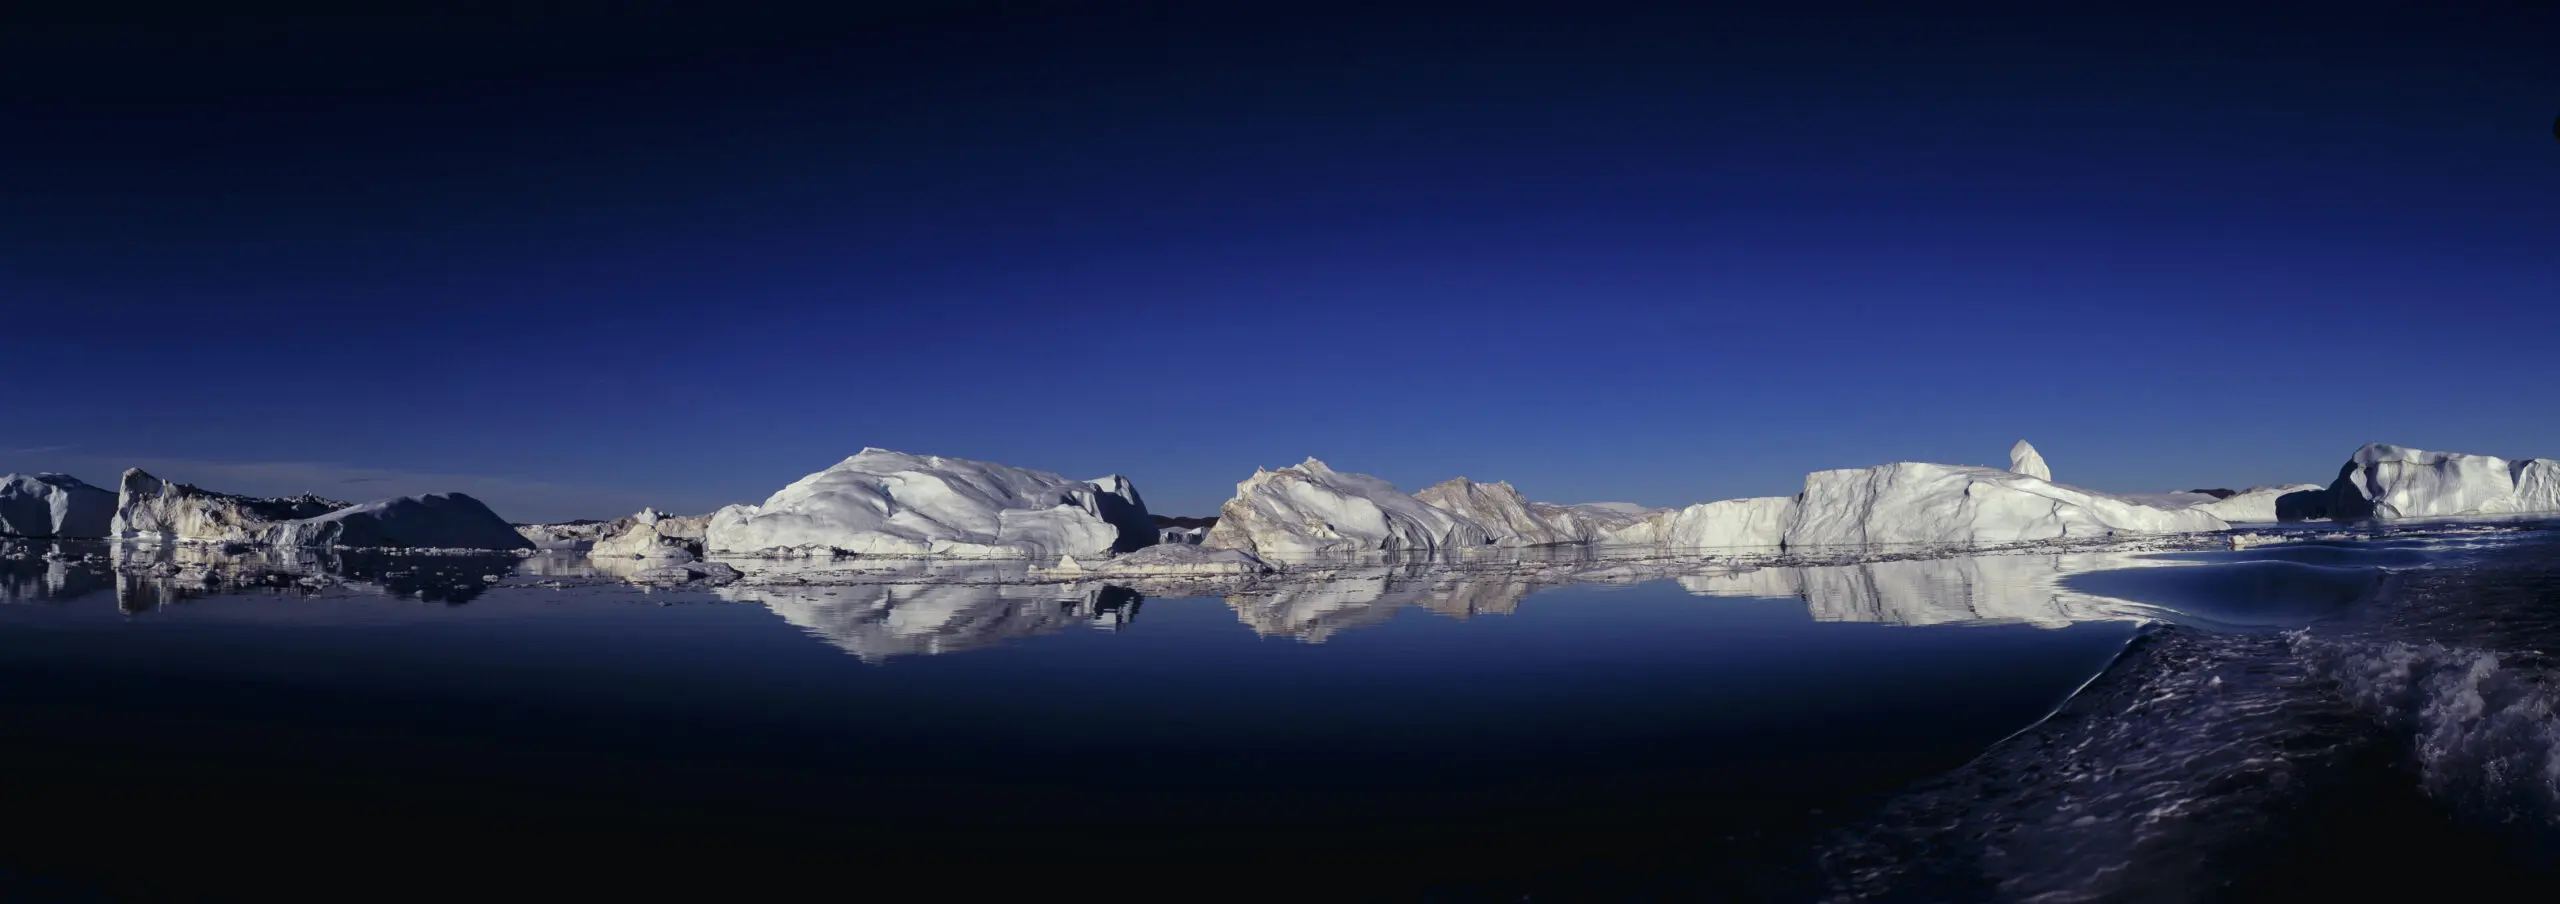 Wandbild (655) Kangia Fjord präsentiert: Wasser,Landschaften,Schnee und Eis,Winter,Berge,Meere,Wasserspiegelungen